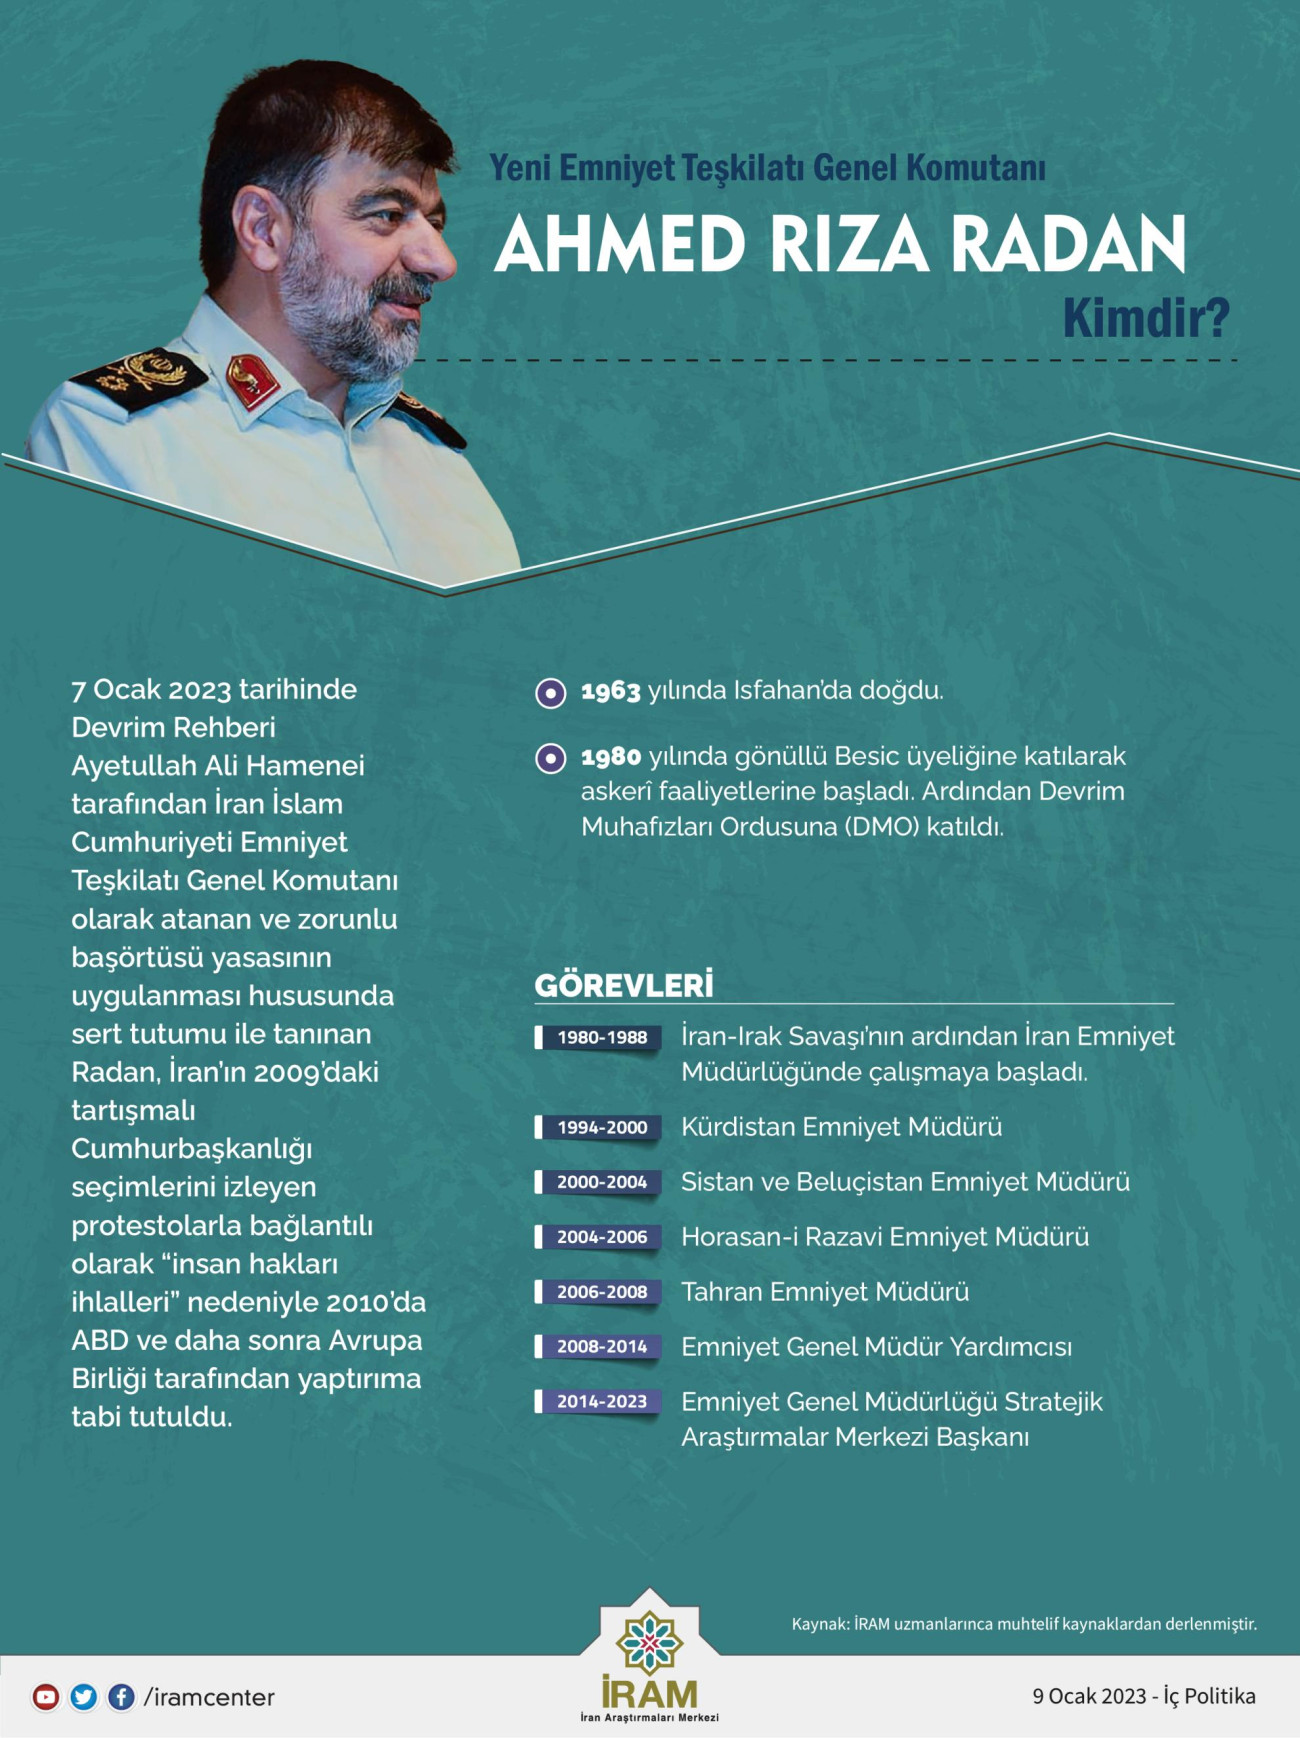 Yeni Emniyet Teşkilatı Genel Komutanı Ahmed Rıza Radan Kimdir?